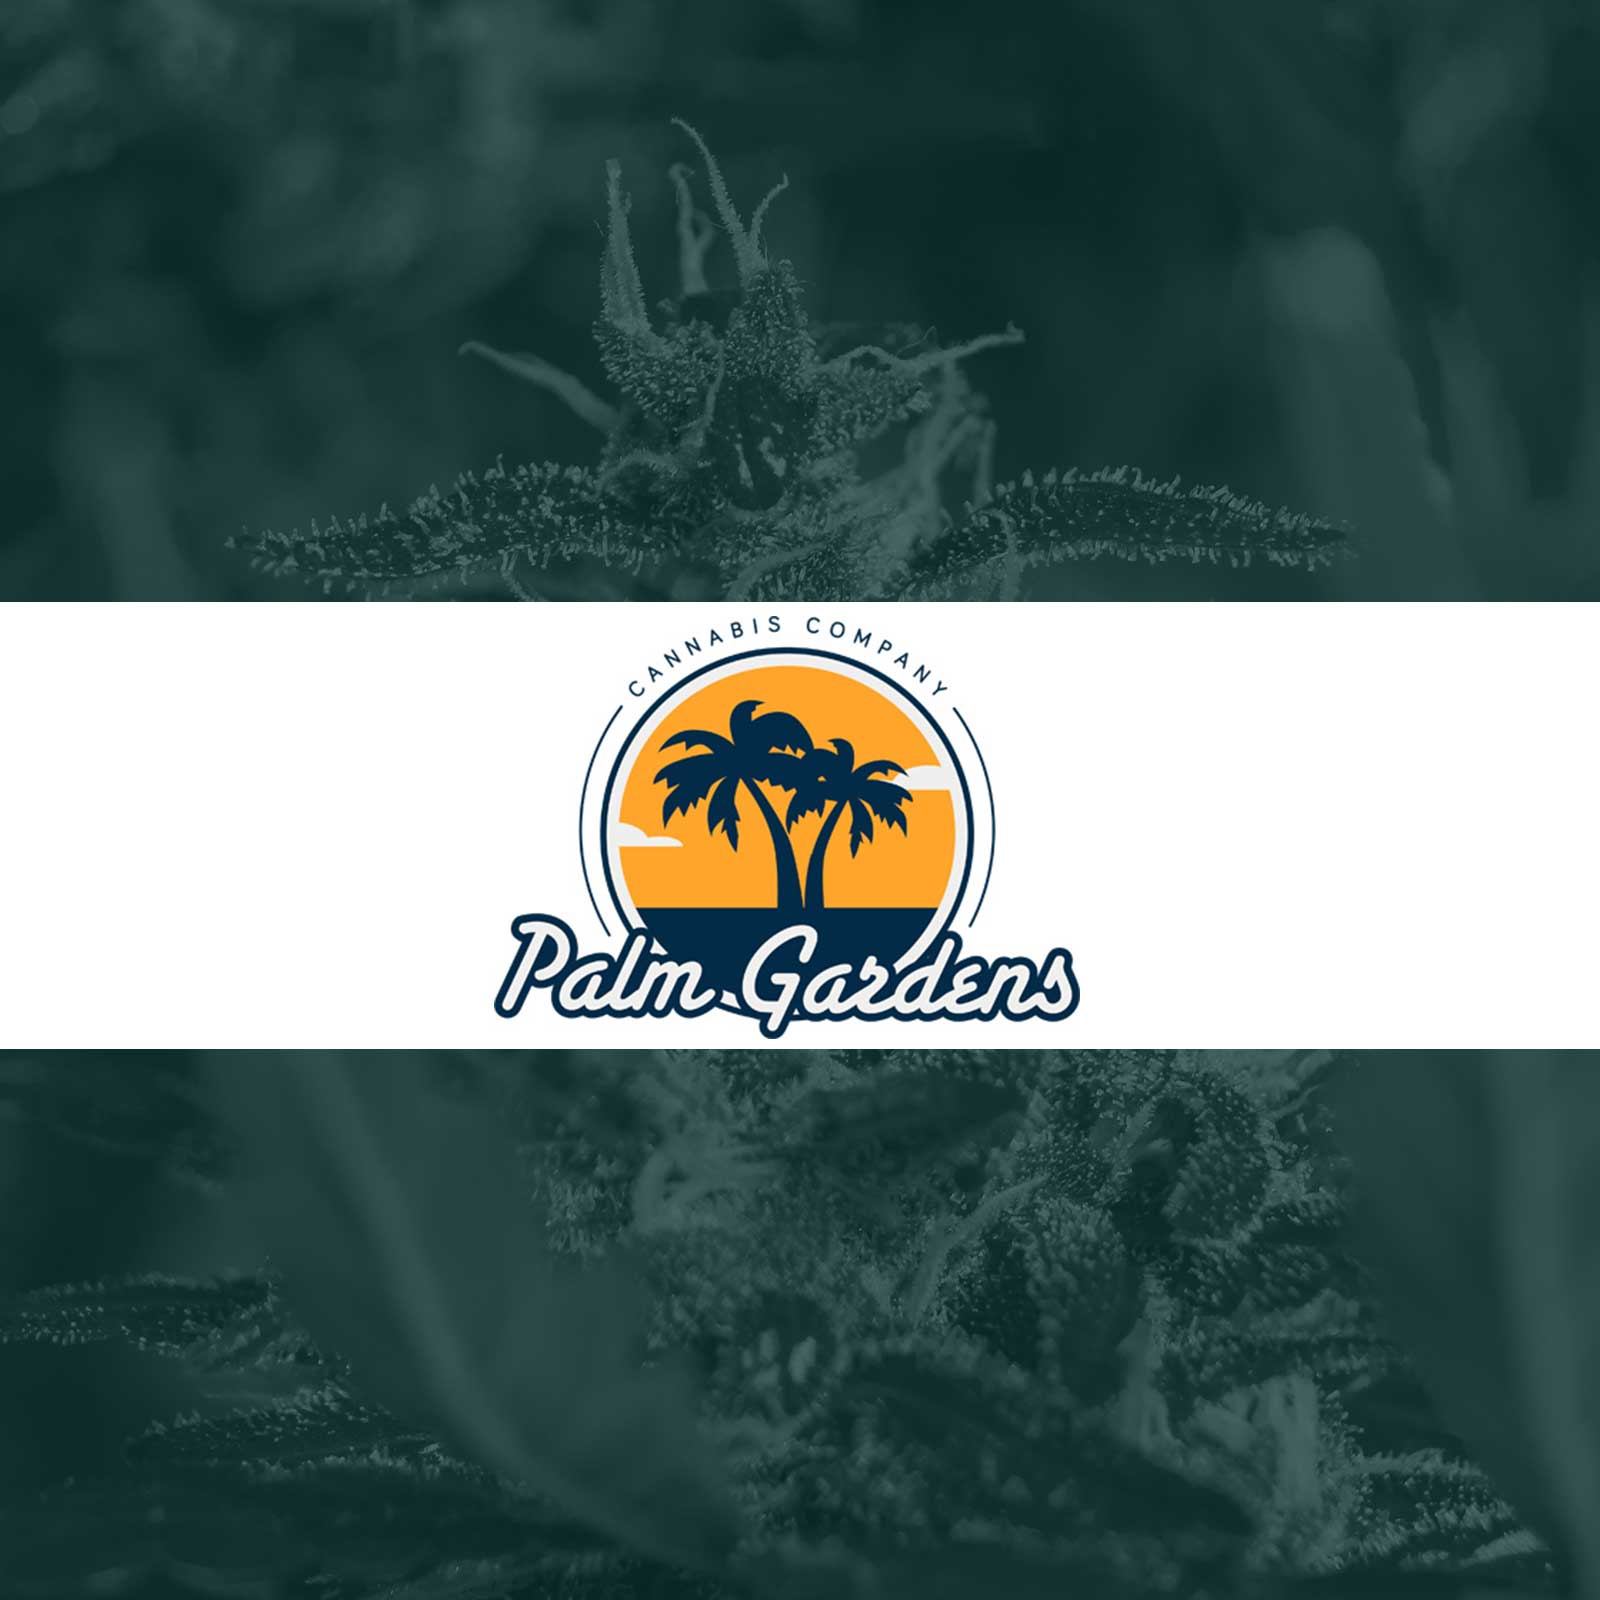 Palm Gardens Cannabis Co.